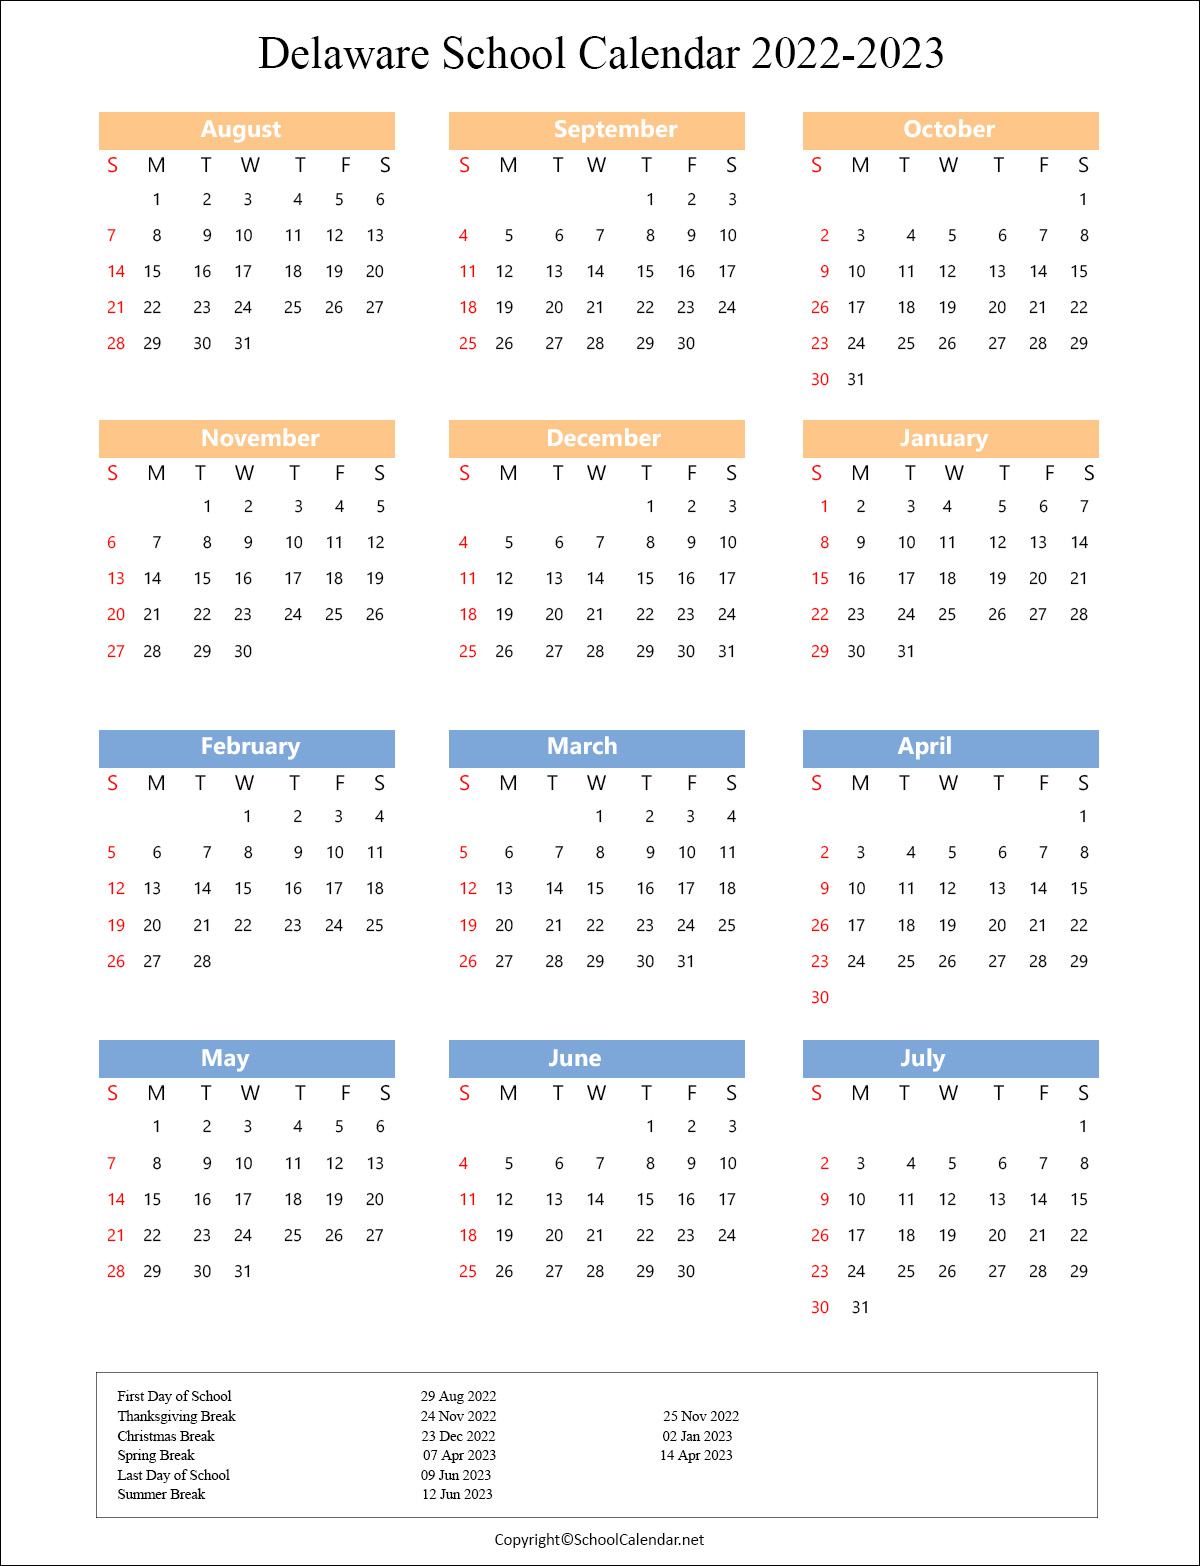 Delaware School Holiday Calendar 2022